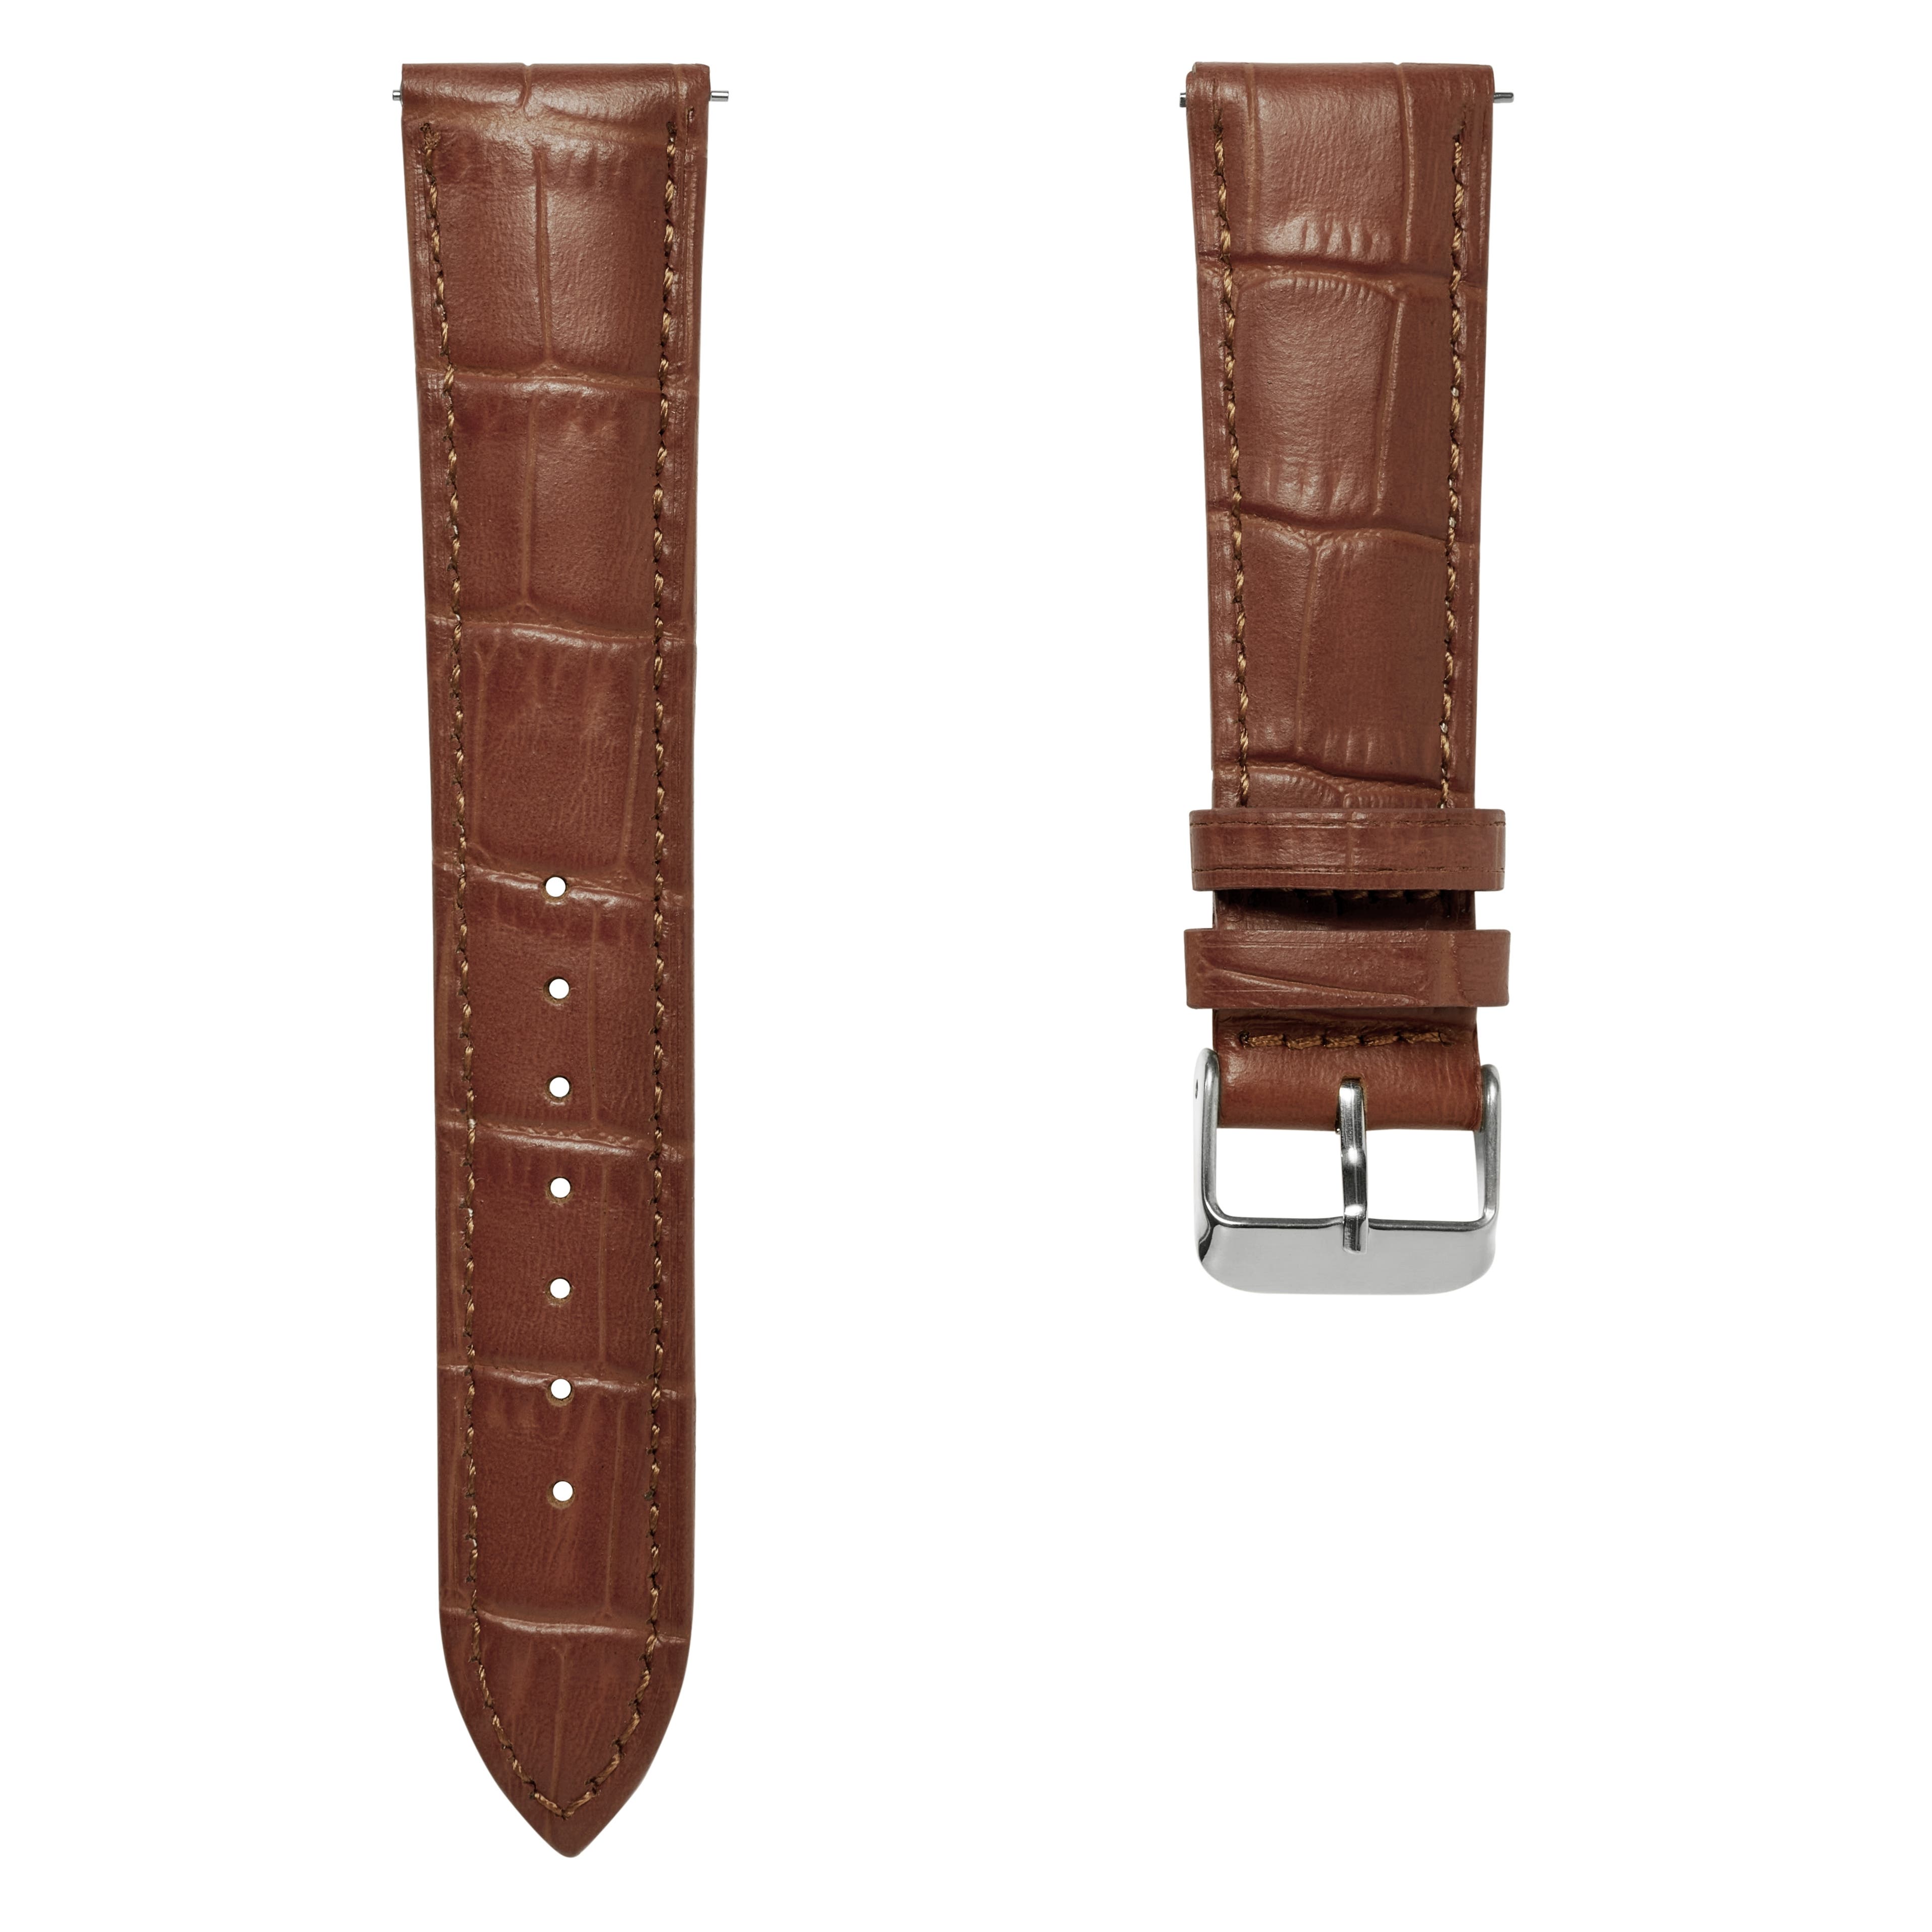 Correa de reloj de cuero marrón con relieve de cocodrilo y hebilla plateada de 20 mm - Liberación rápida